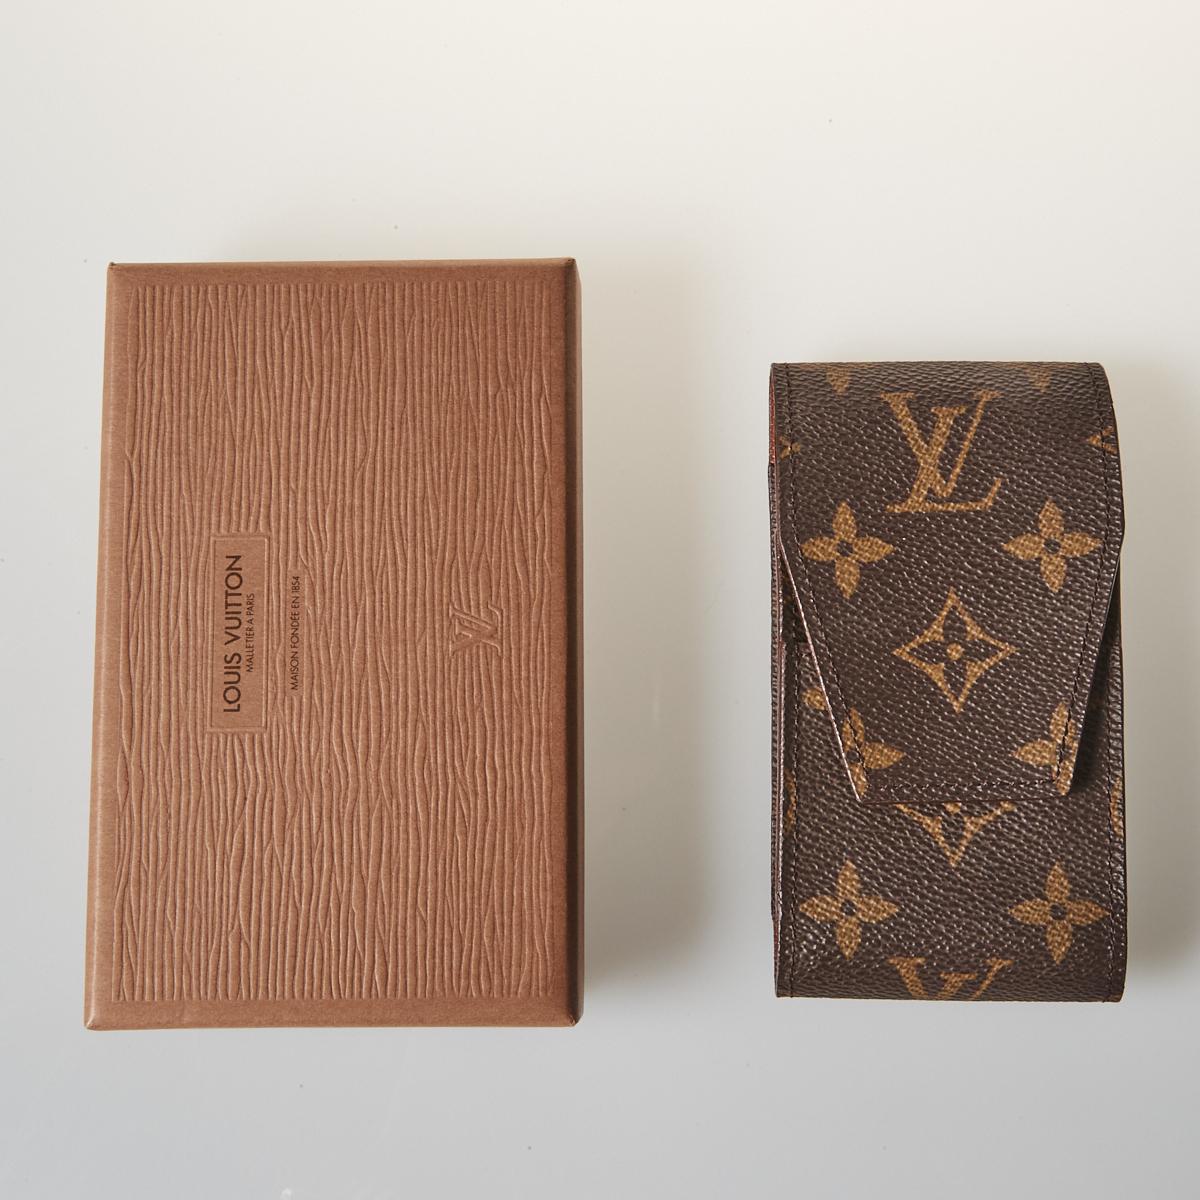 Louis Vuitton Vintage Etui Monogram Cigarette Case